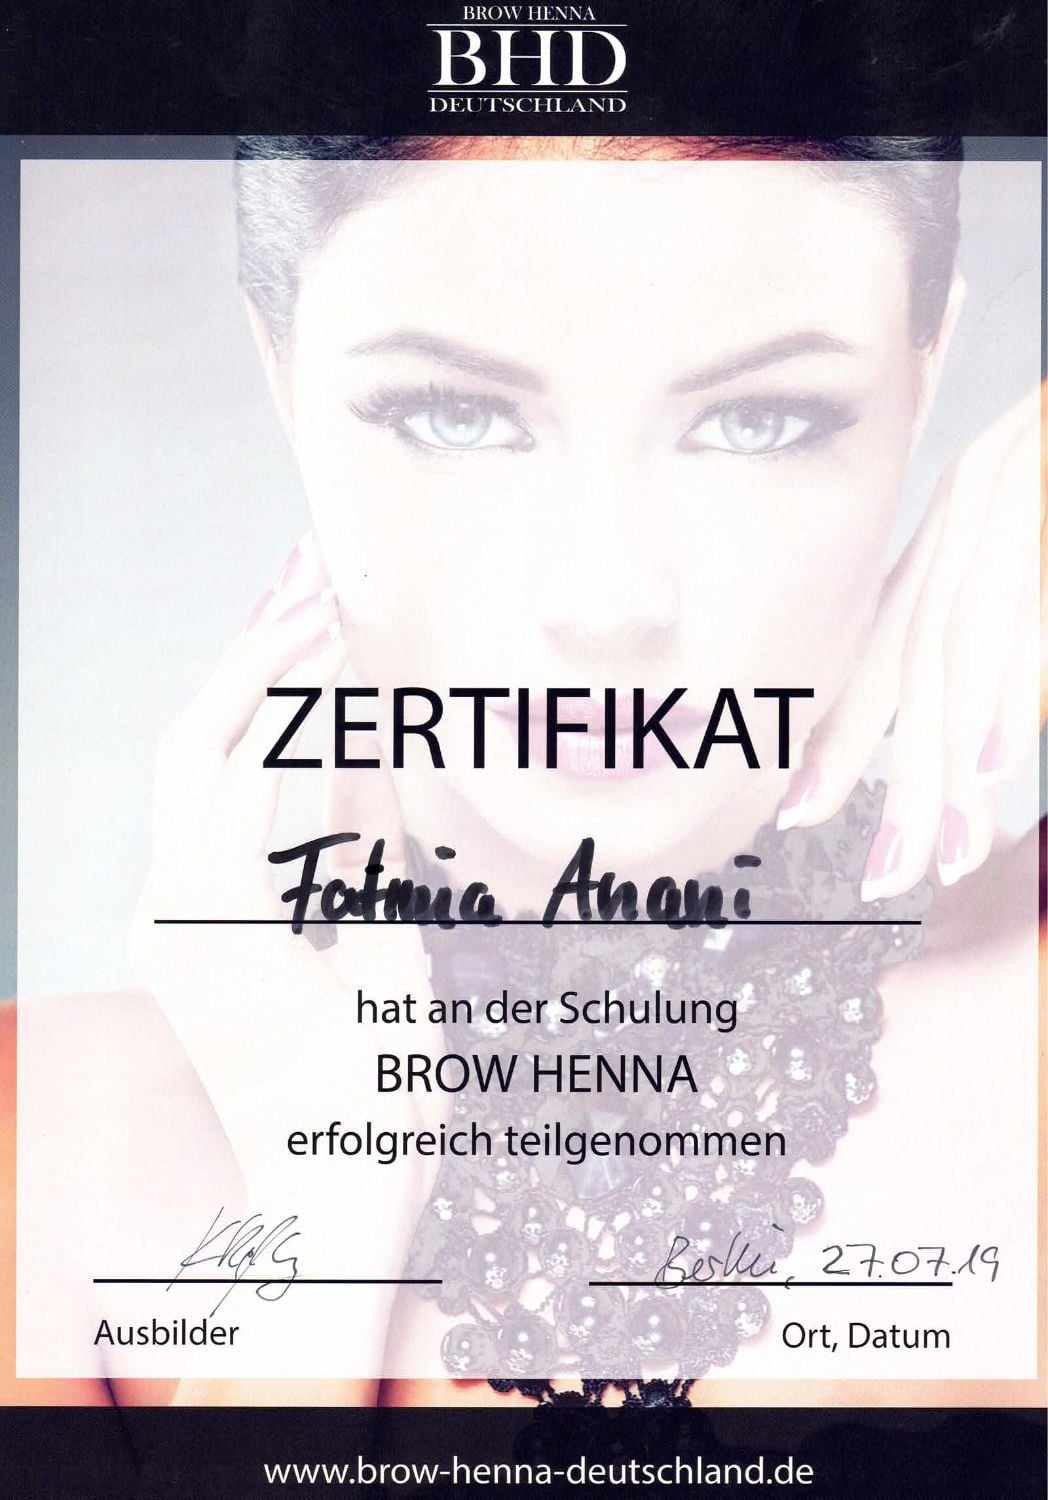 Zertifikat Brow Henna für Fatima Anani von BHD